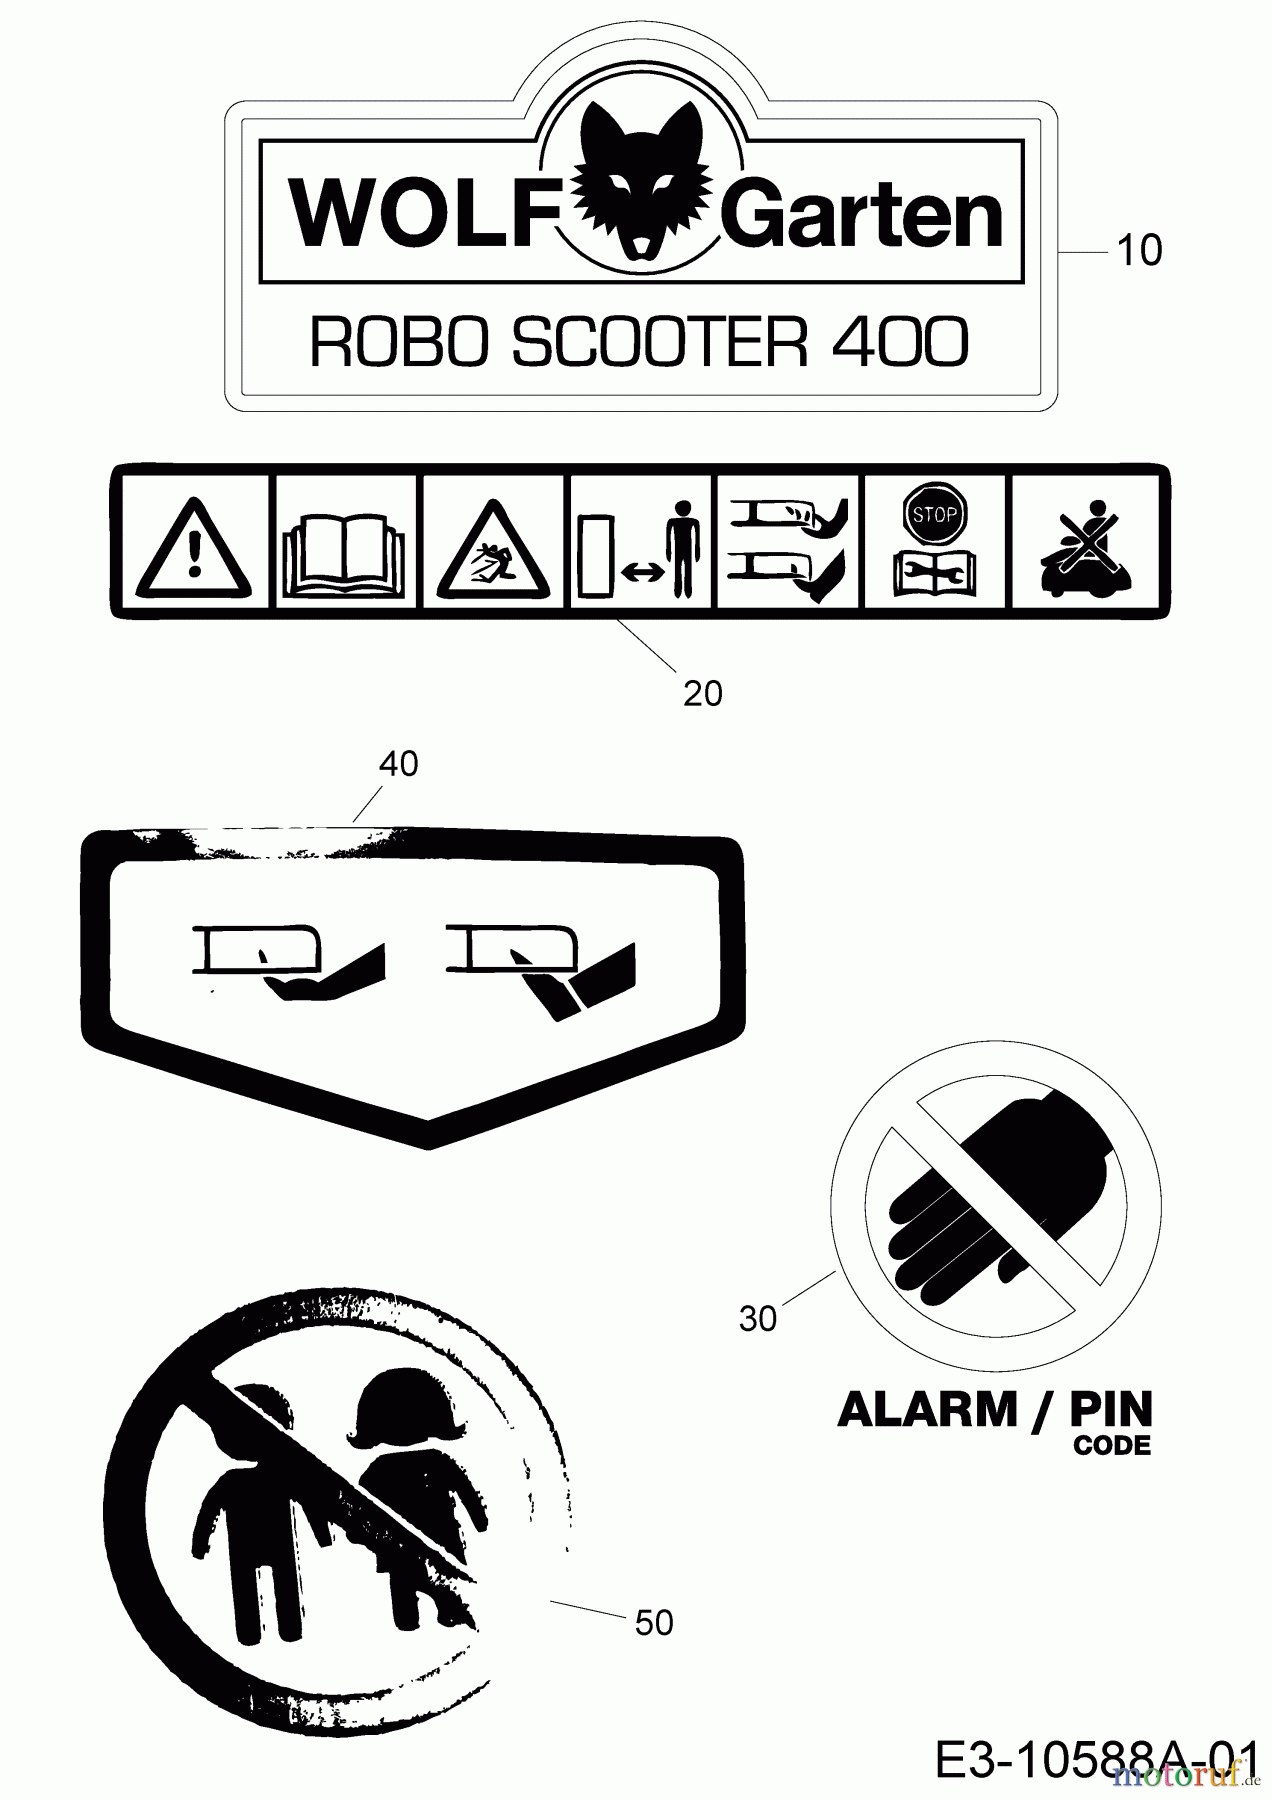  Wolf-Garten Tondeuse robot Robo Scooter 400 18AO04LF650  (2014) Decalcomanie